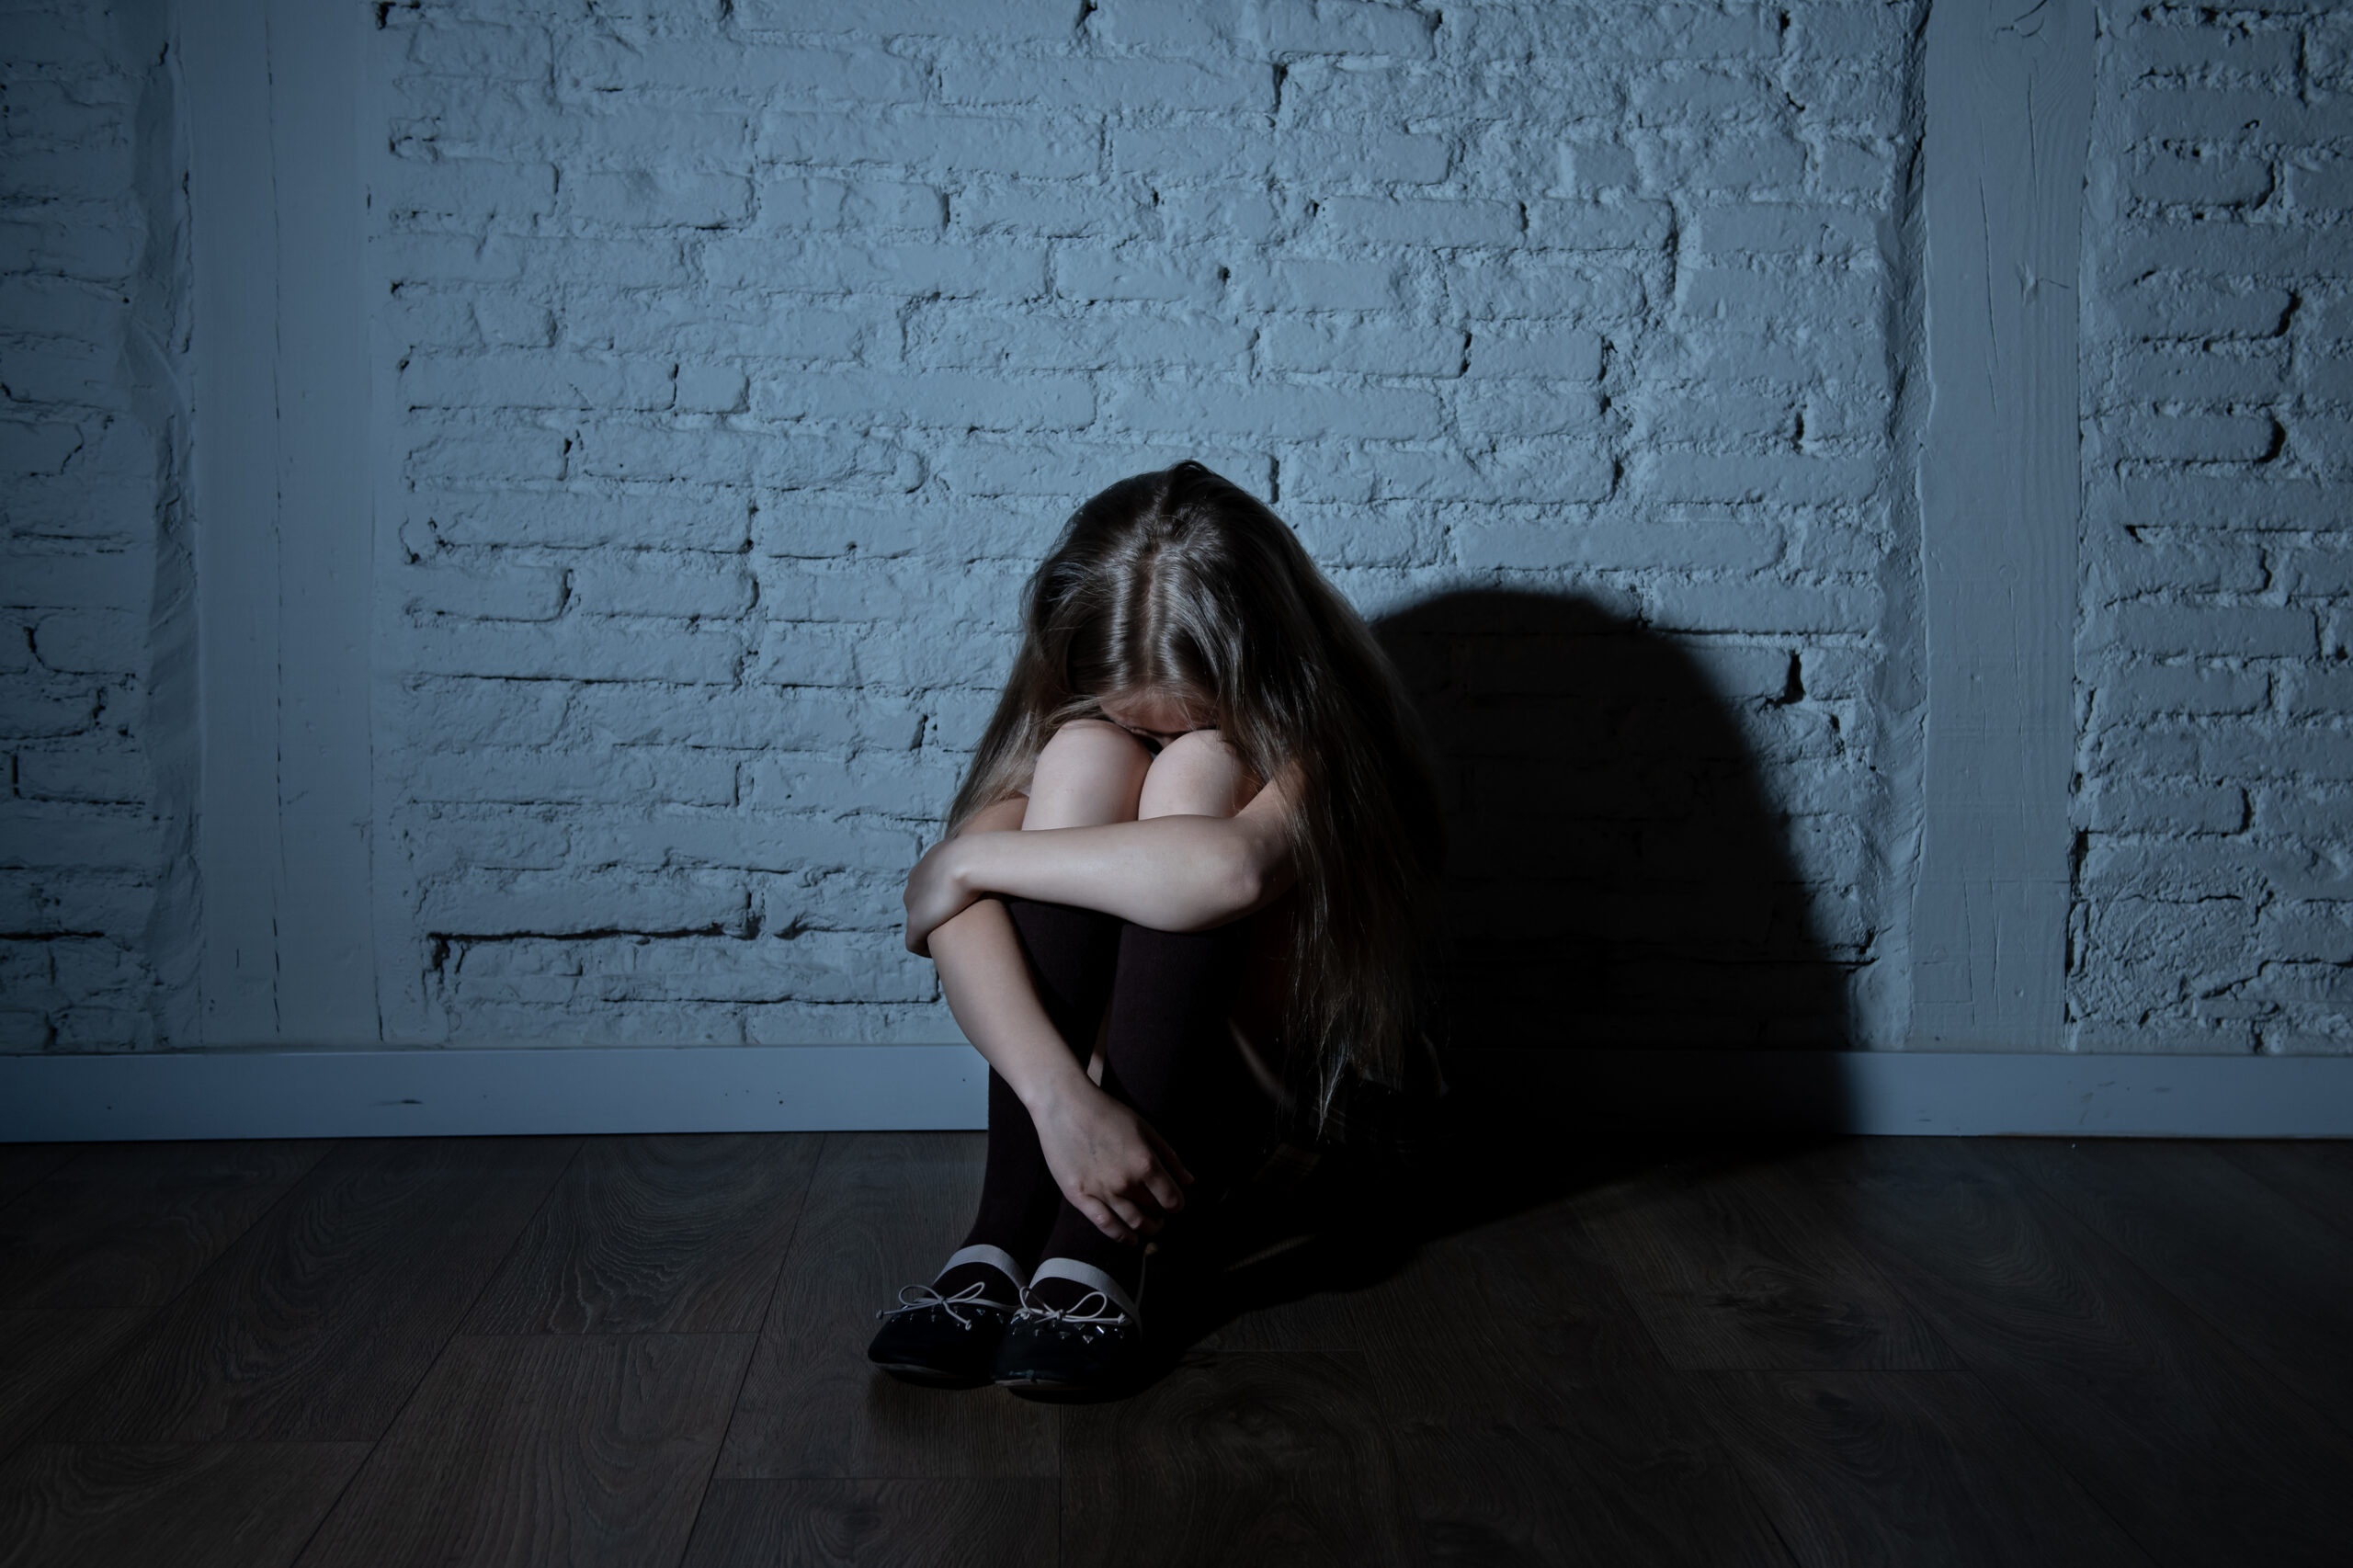 Minoră, abuzată sexual în Botoșani. Individul este pus sub control judiciar